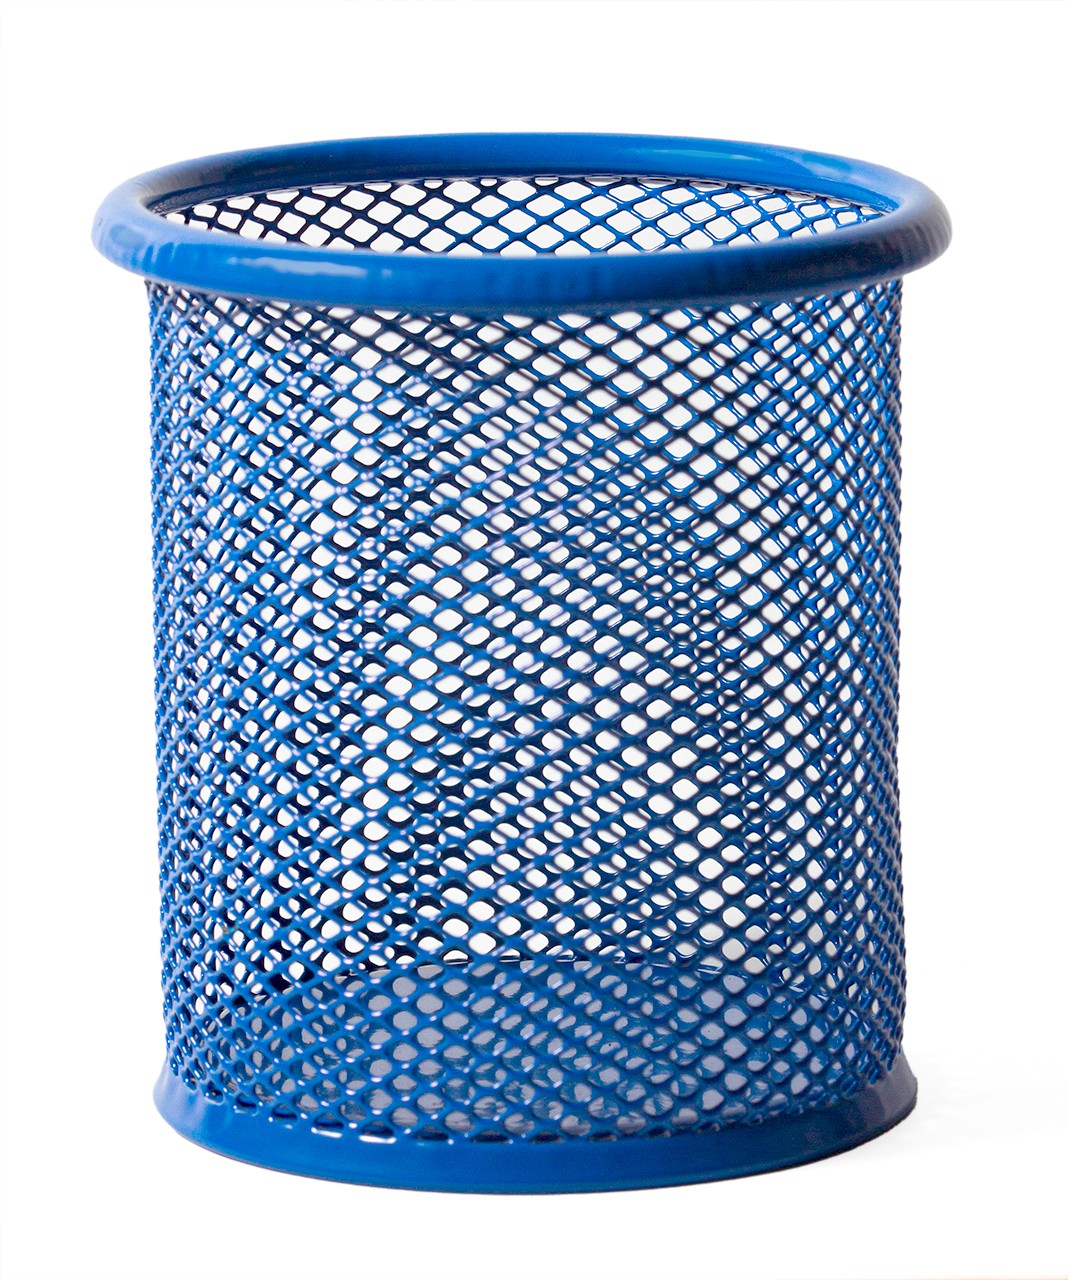 Papelera metálica blanca de reciclaje 3 residuos. Capacidad 132 litros  (Amarillo / Azul / Marrón) - Respira de compres al Ripollès